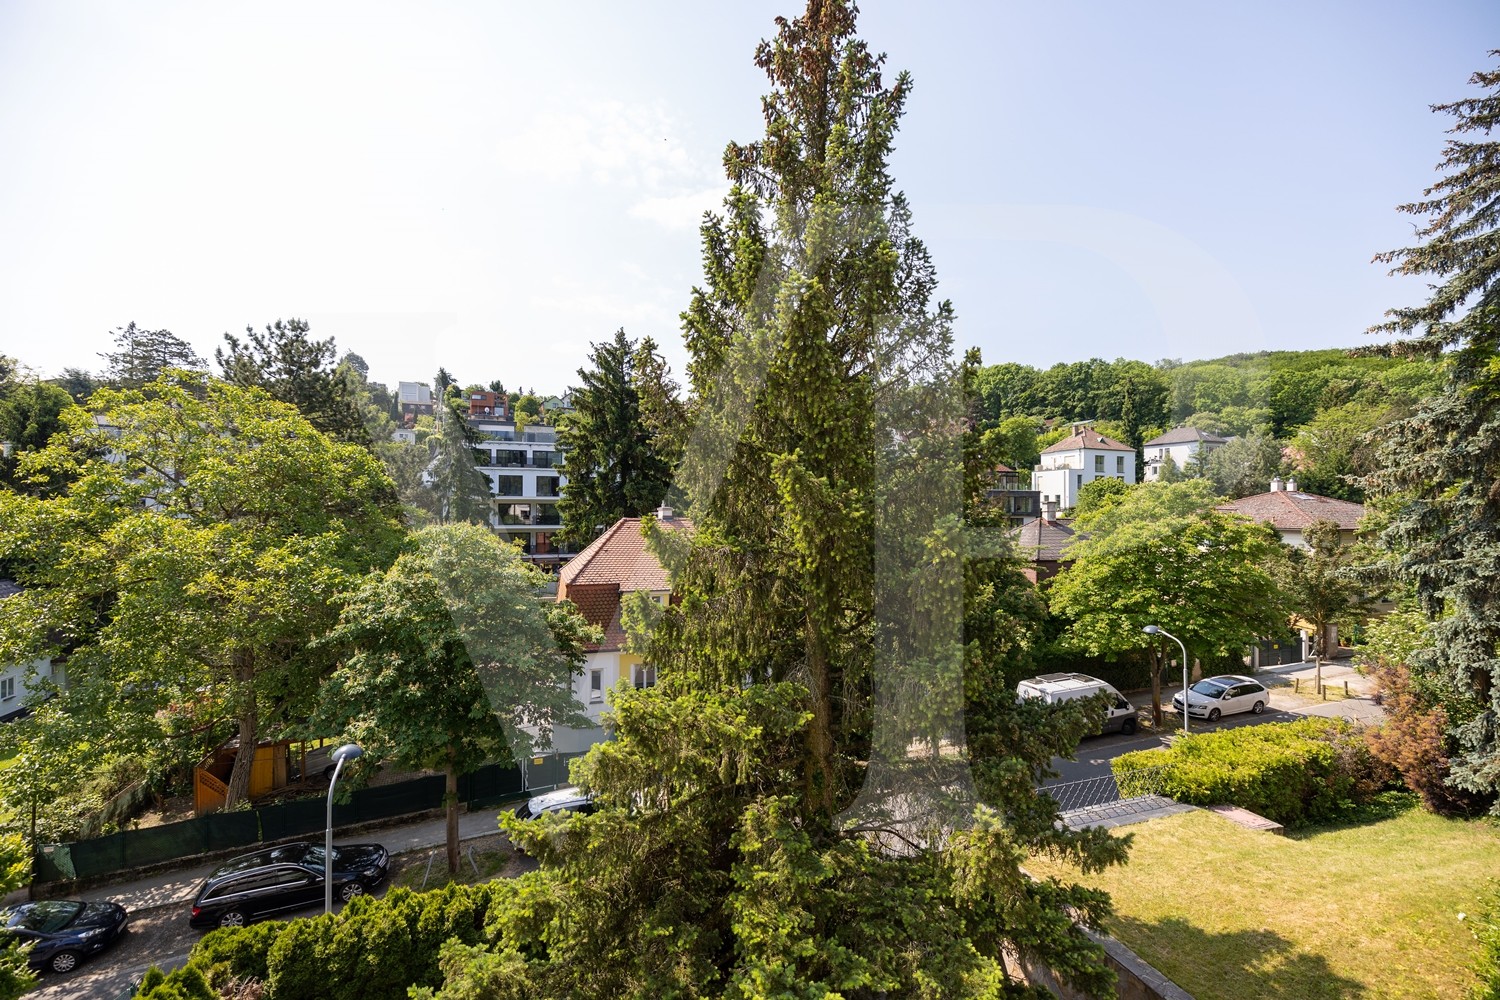 Wunderschönes Grundstück mit Potential in Grünlage von Dornbach